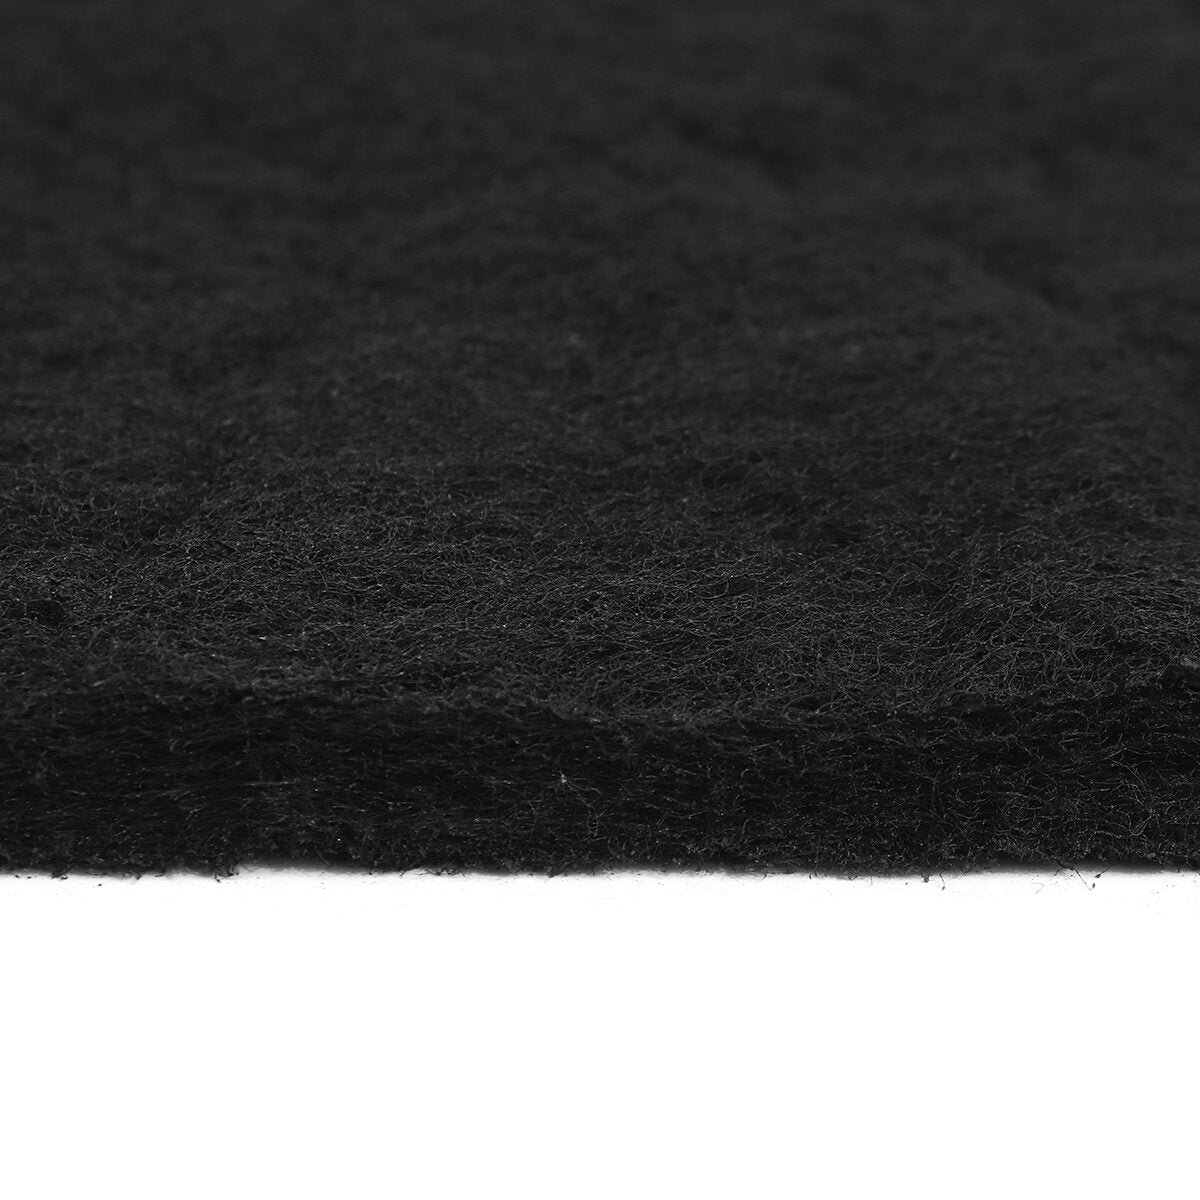 1Pcs Square Universal Activated Carbon Foam Sponge Air Filter Sheet Pad 1mx1m x0.5/1cm